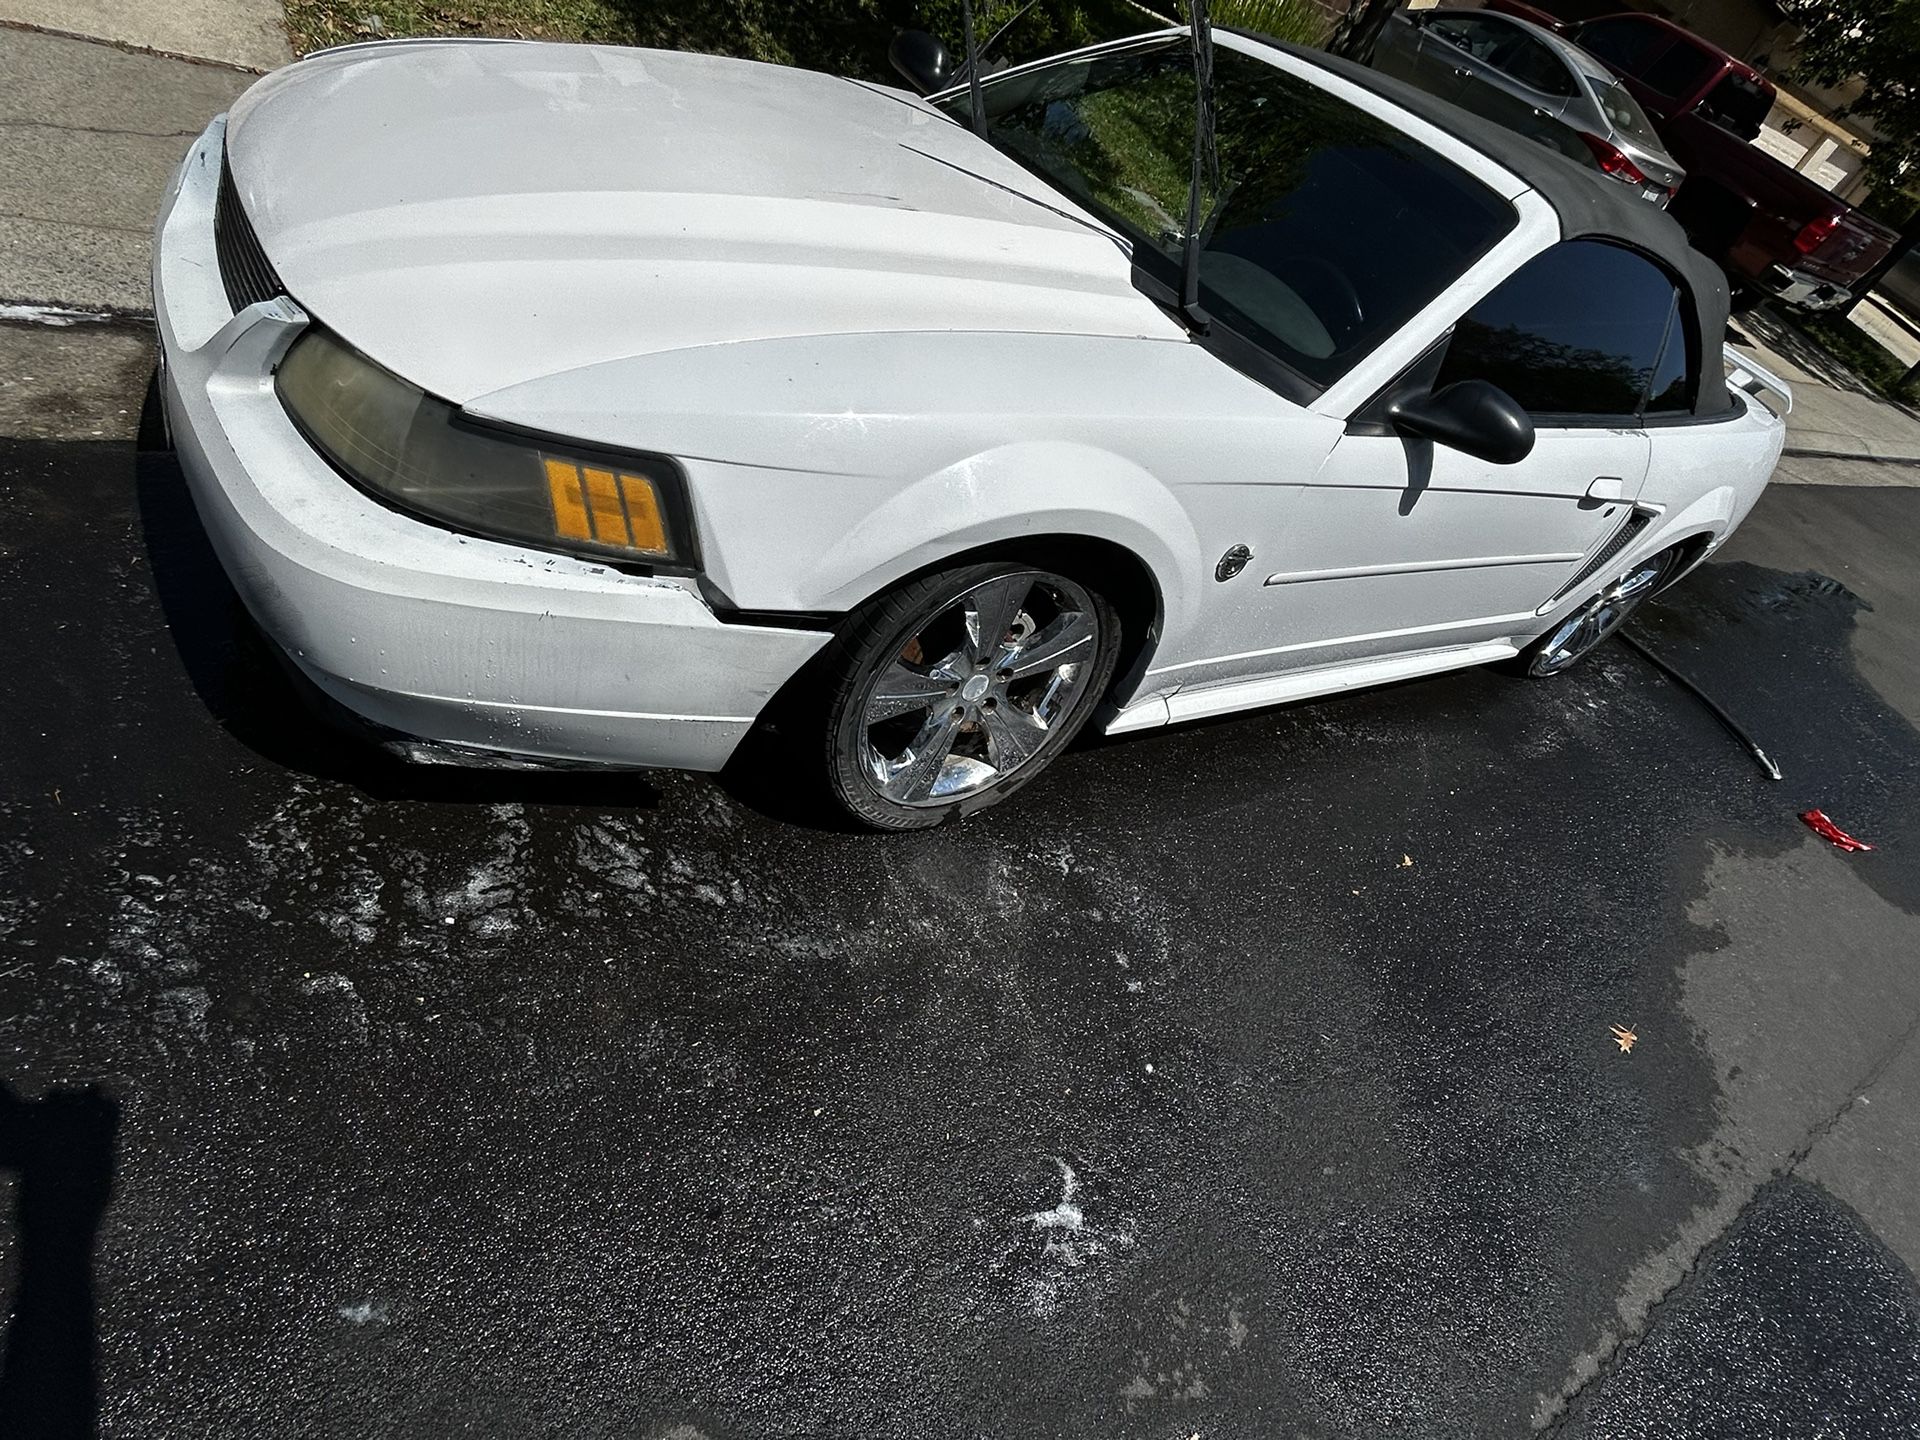 2004 Mustang 3.9L